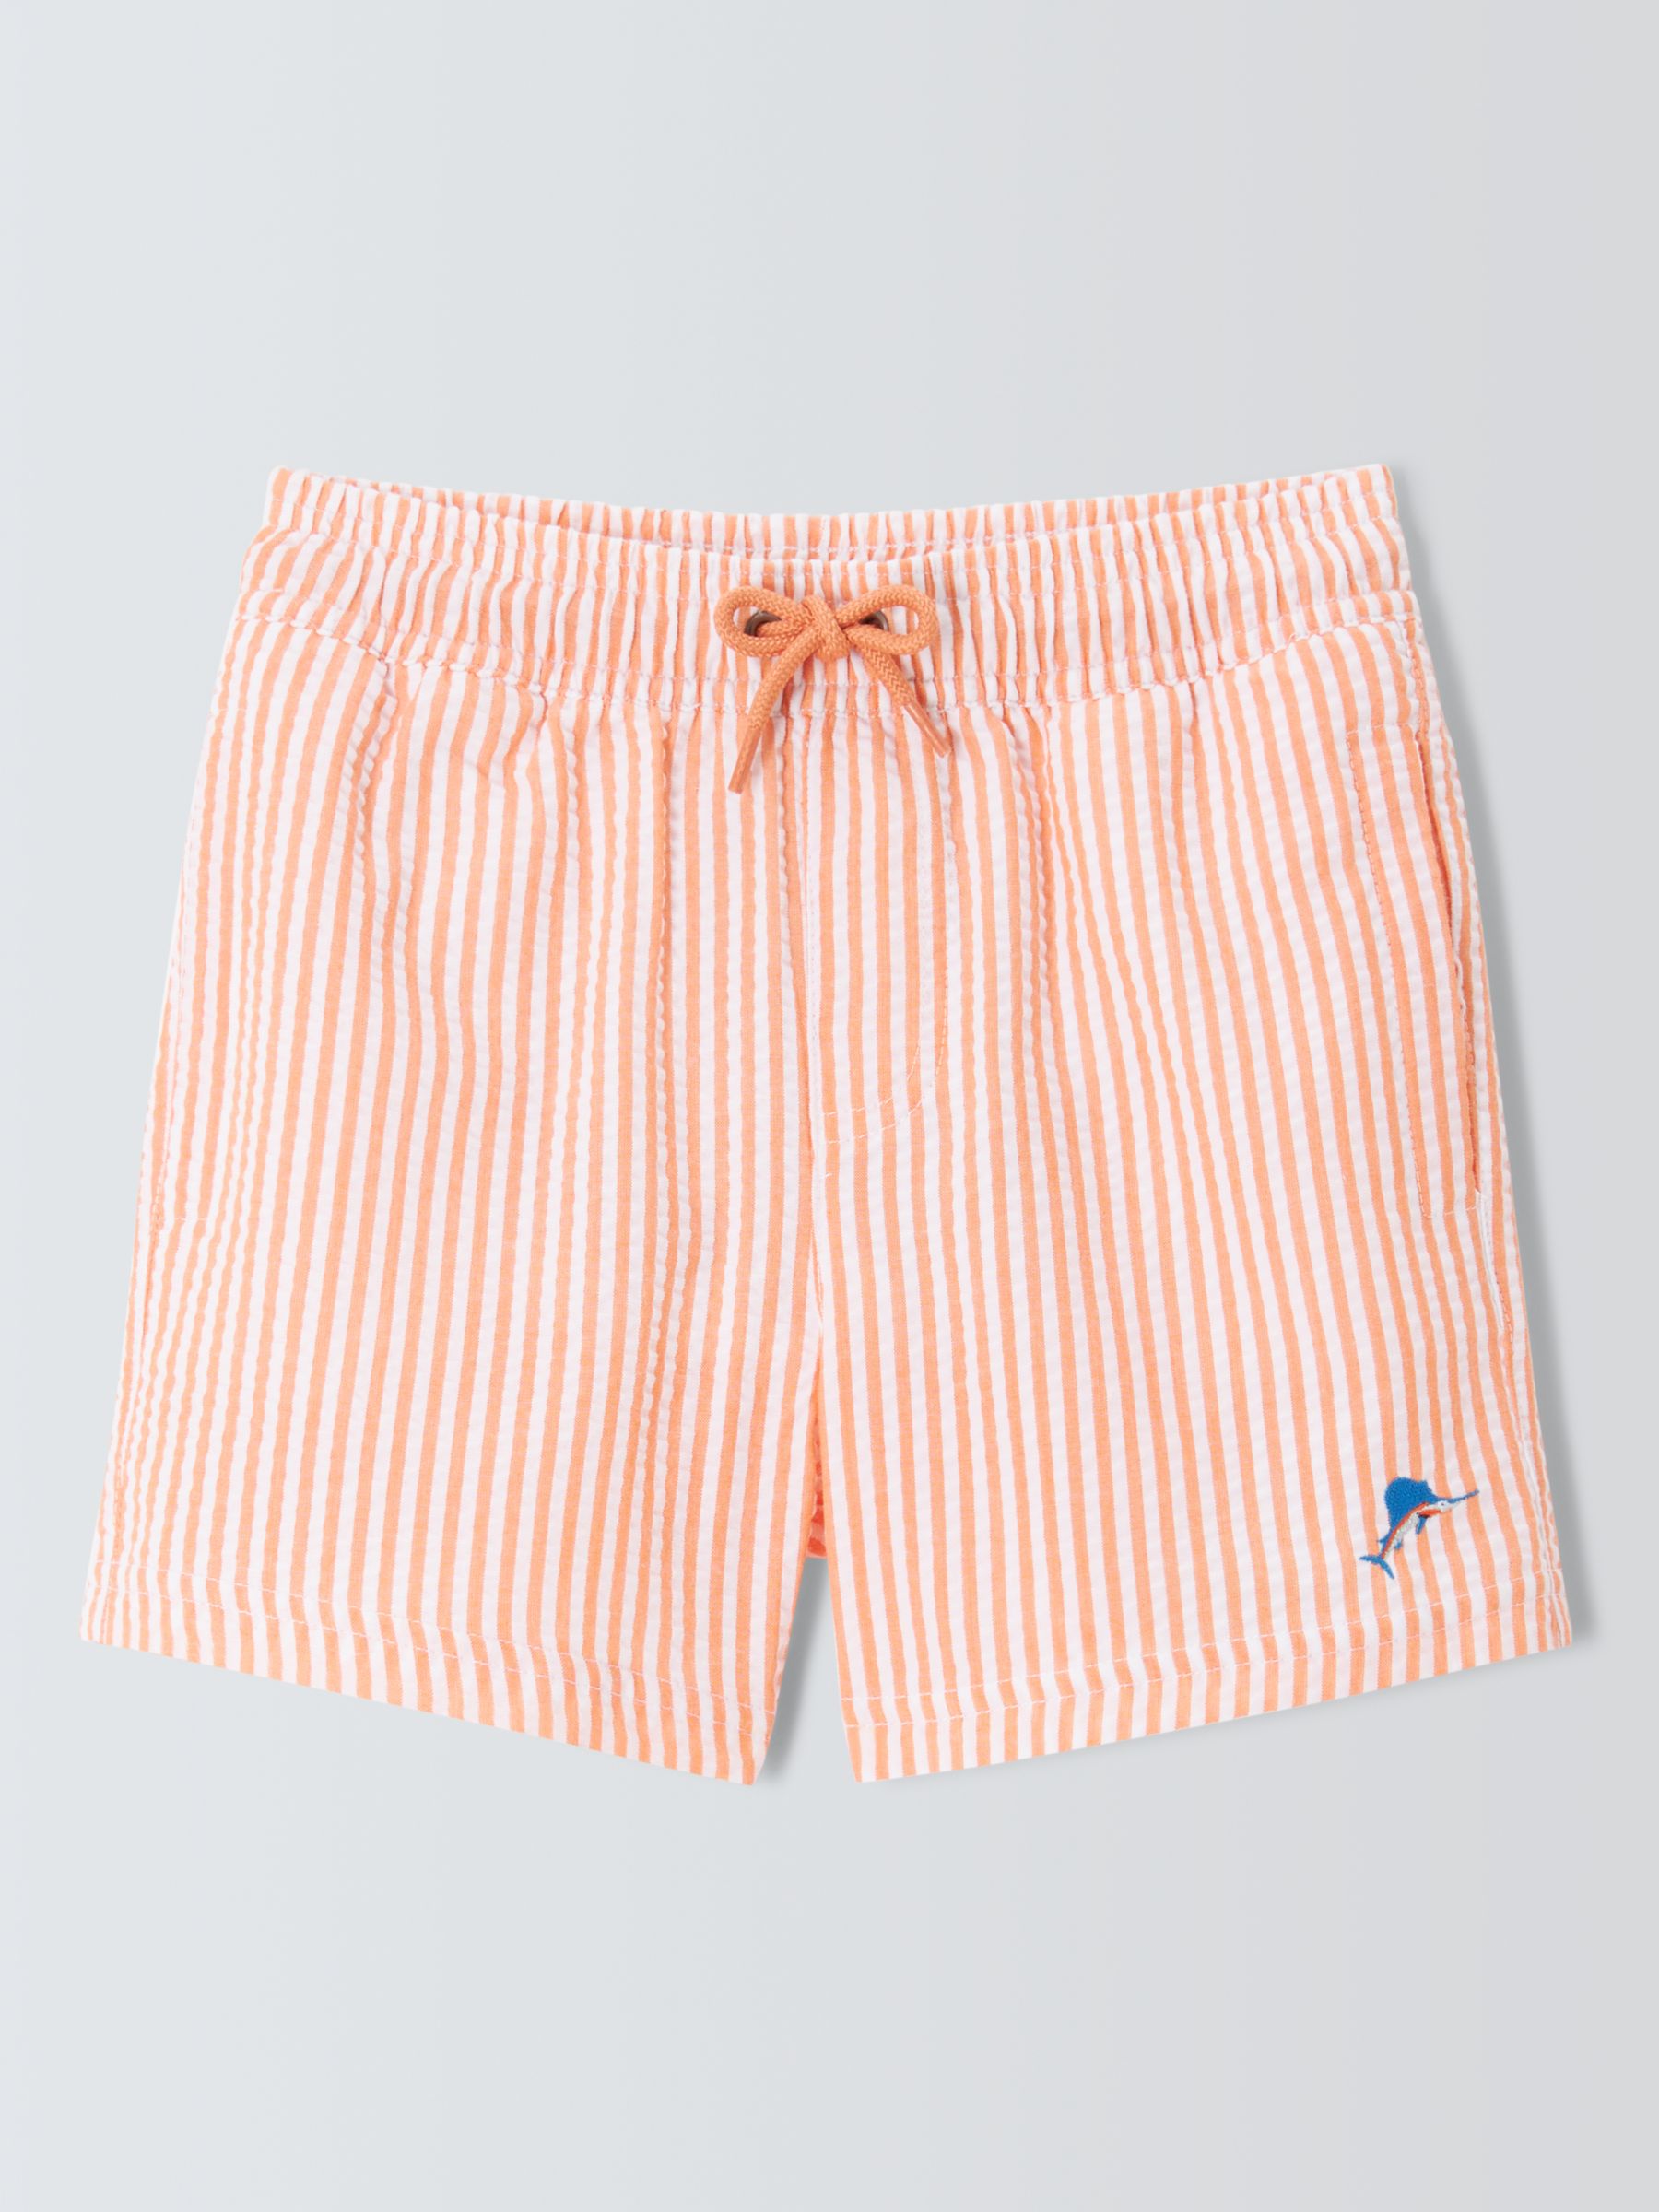 John Lewis Kids' Seersucker Stripe Fish Swim Shorts, Orange, 3 years